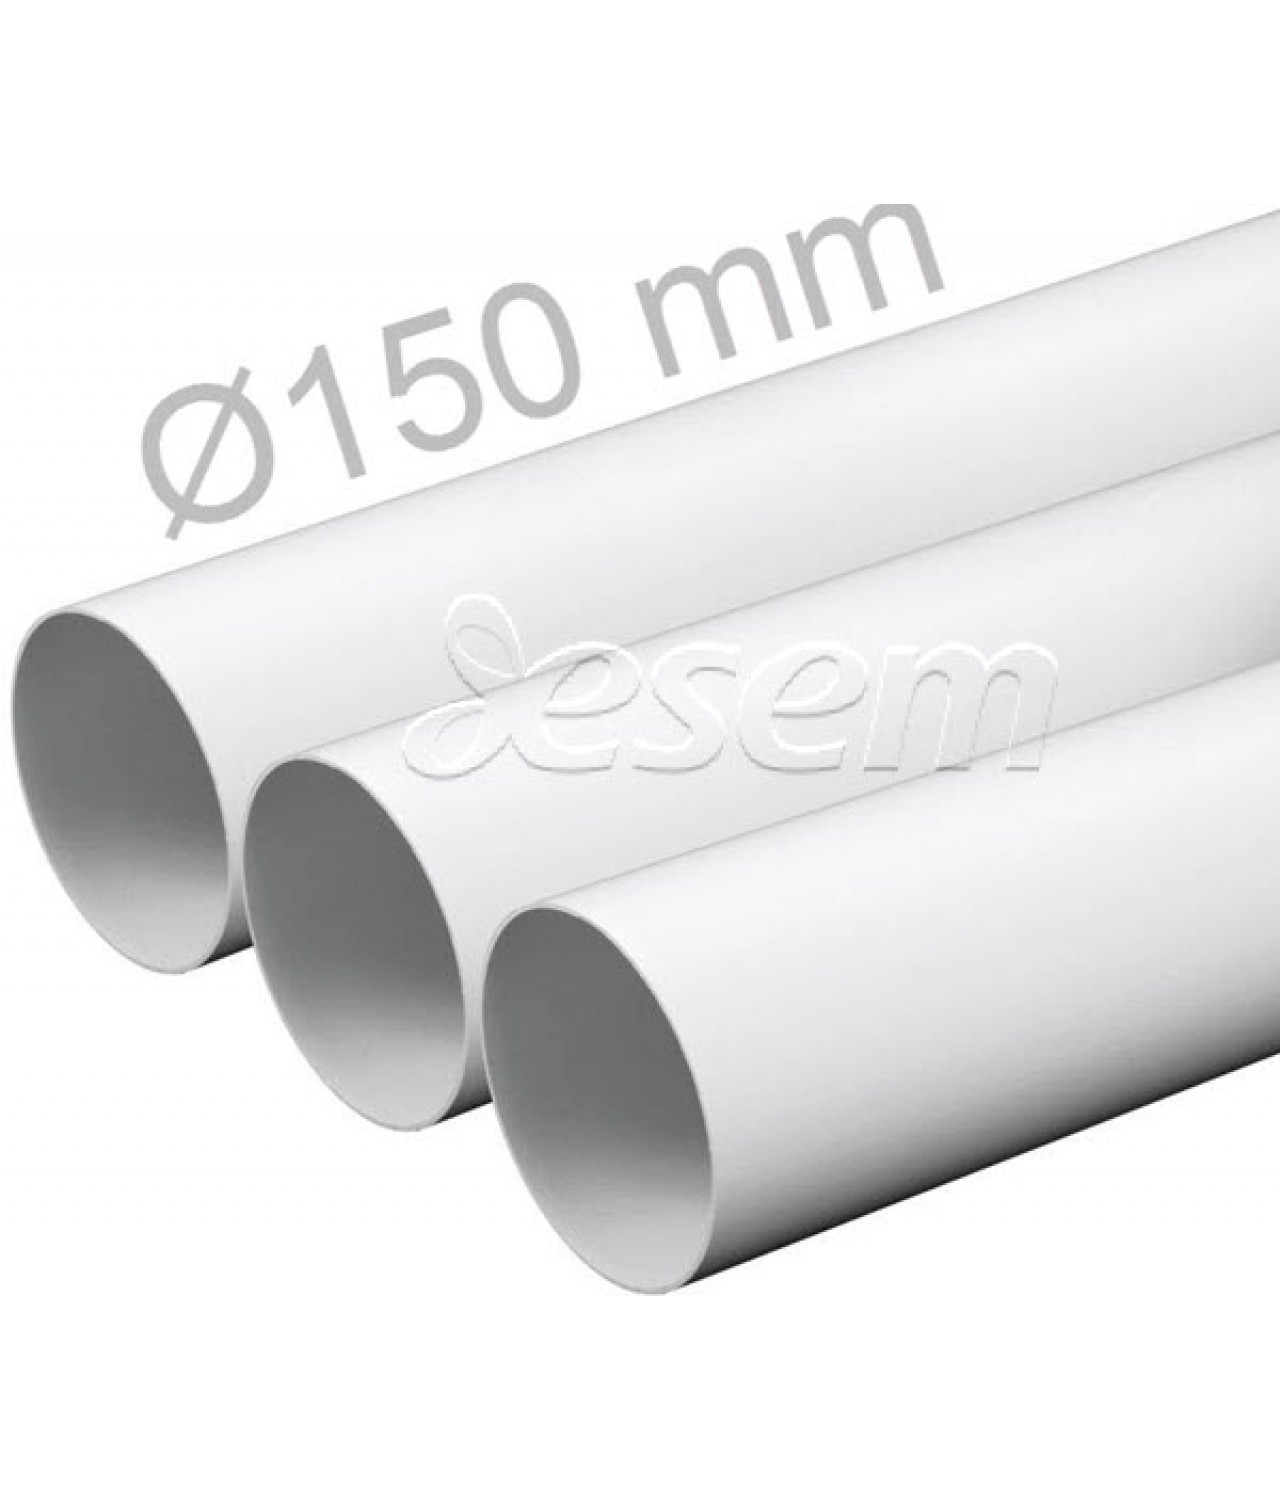 Пластиковые круглые воздуховоды EKO 150 мм